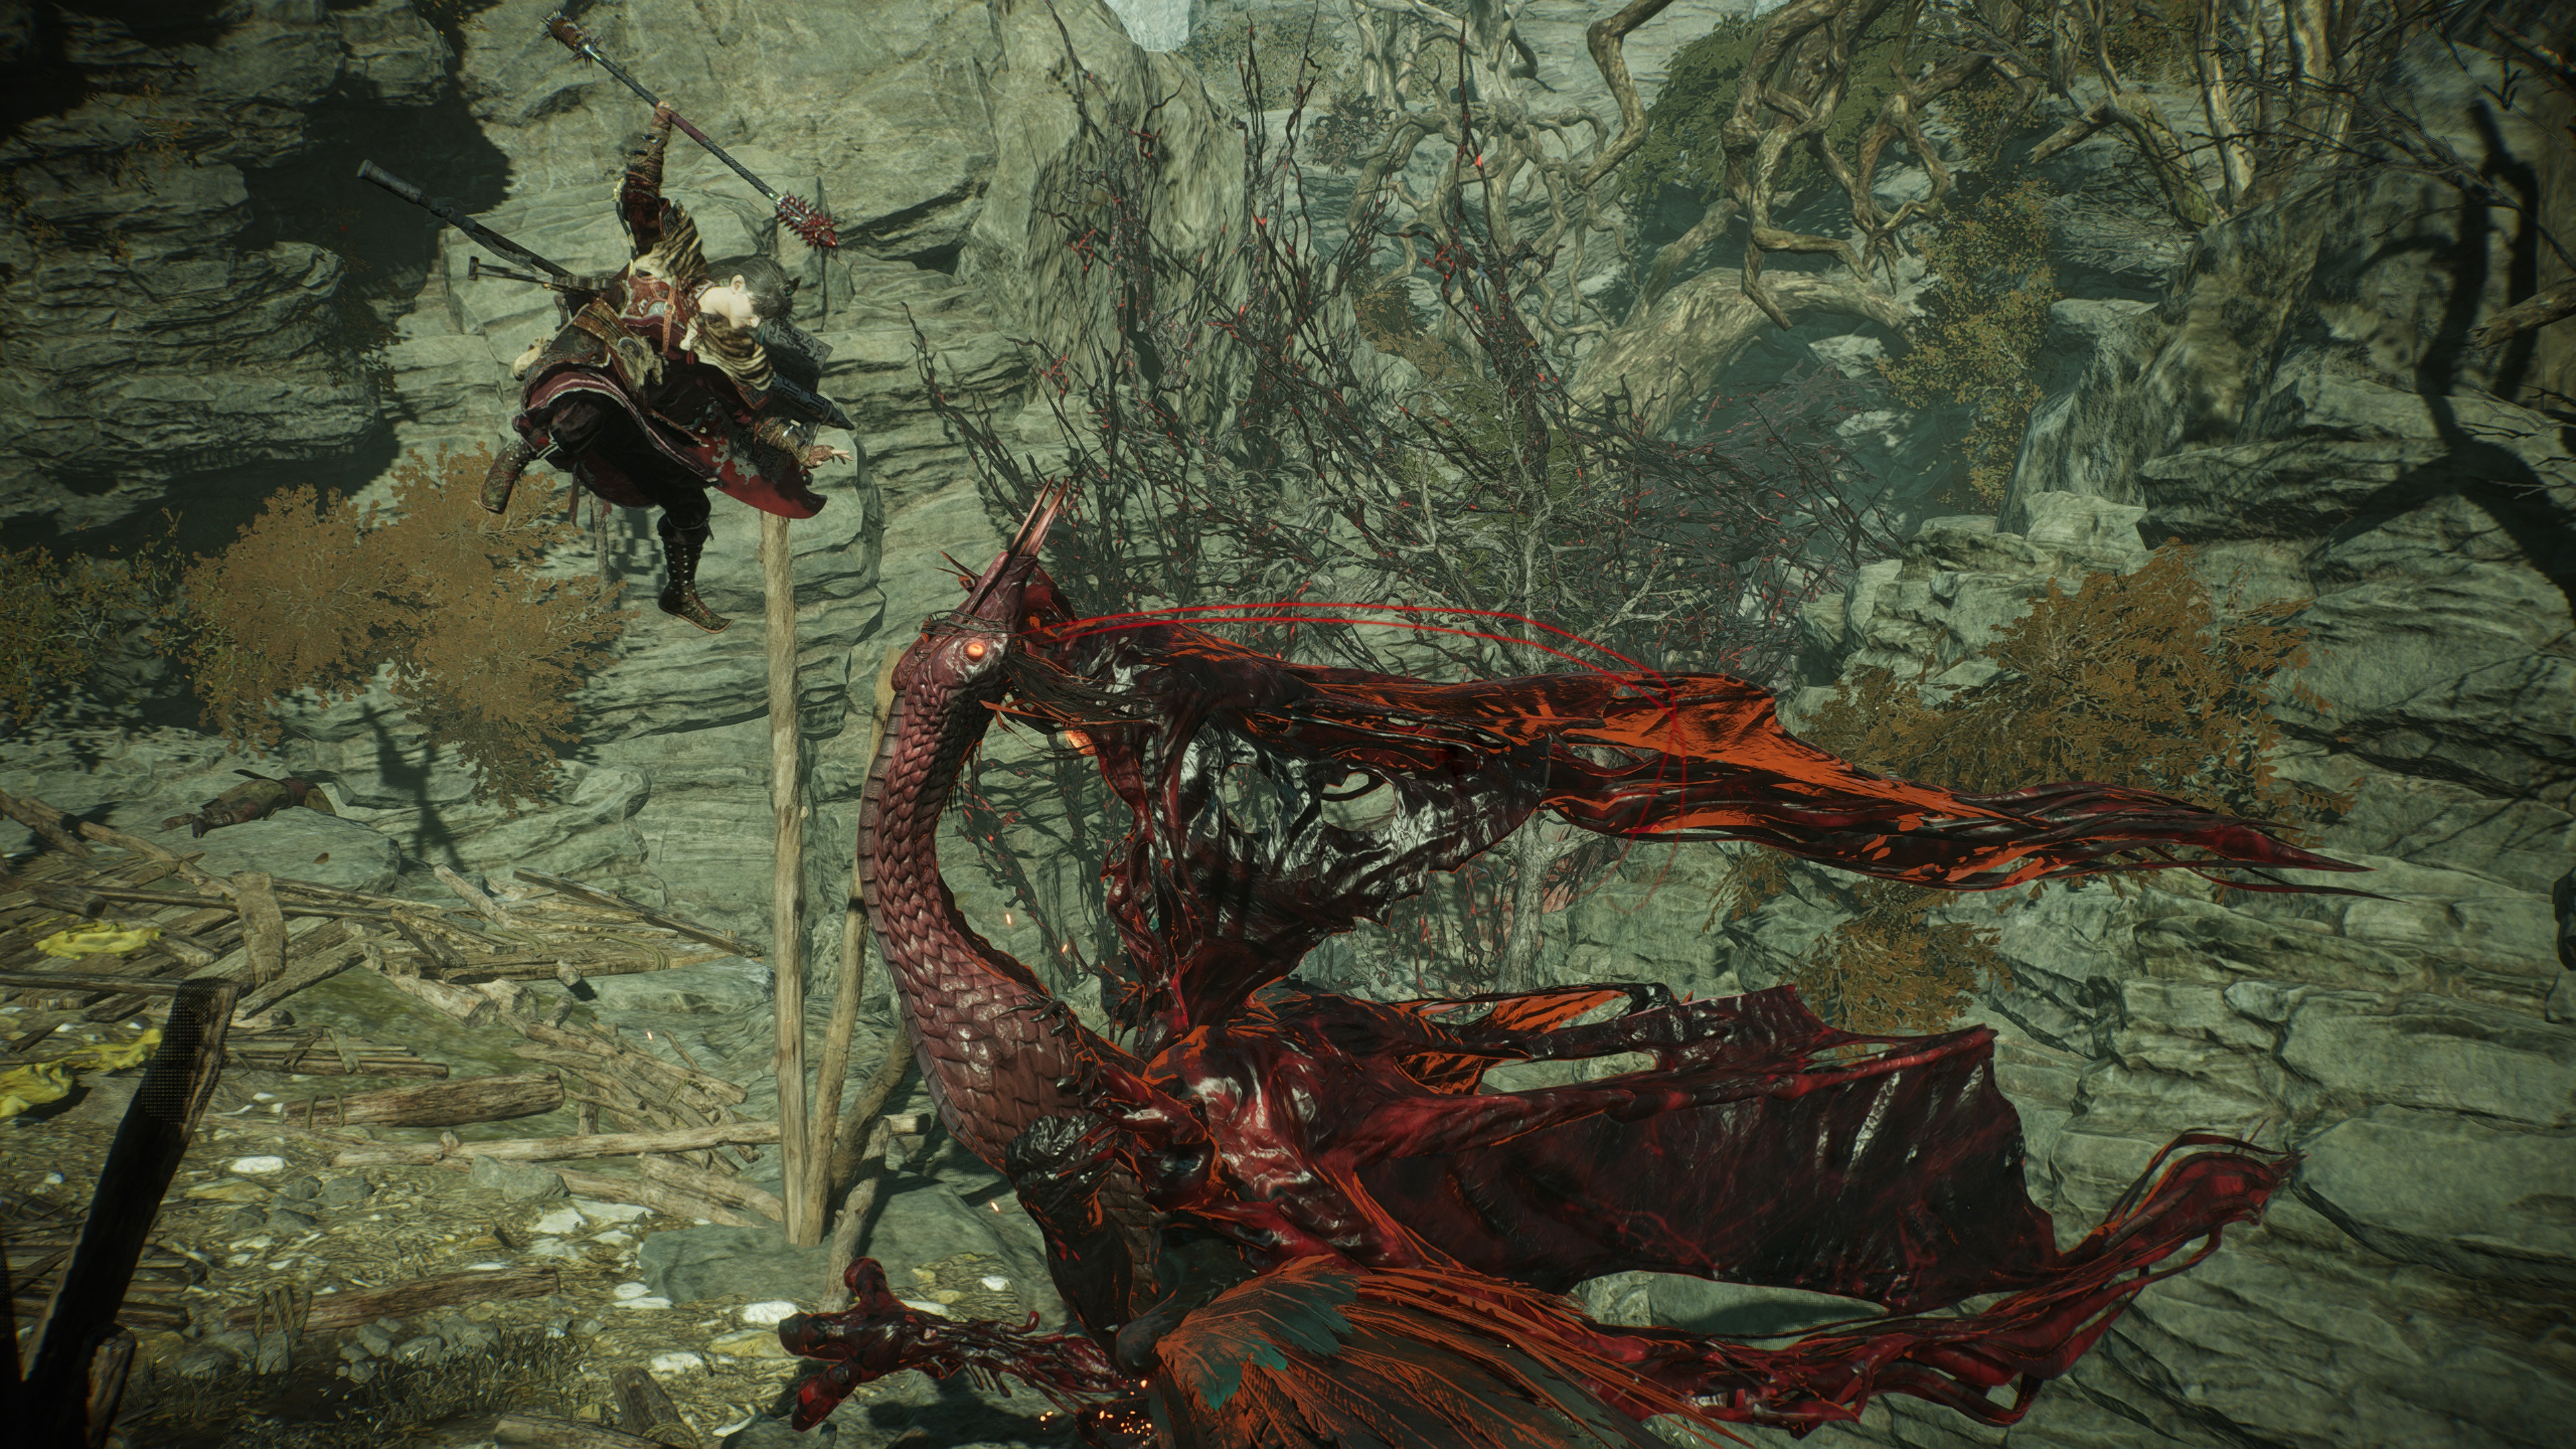 Captura de pantalla del juego Wo Long: Fallen Dynasty del jugador que realiza un golpe fatal en un Suanyu, tomada en modo de fotografía.